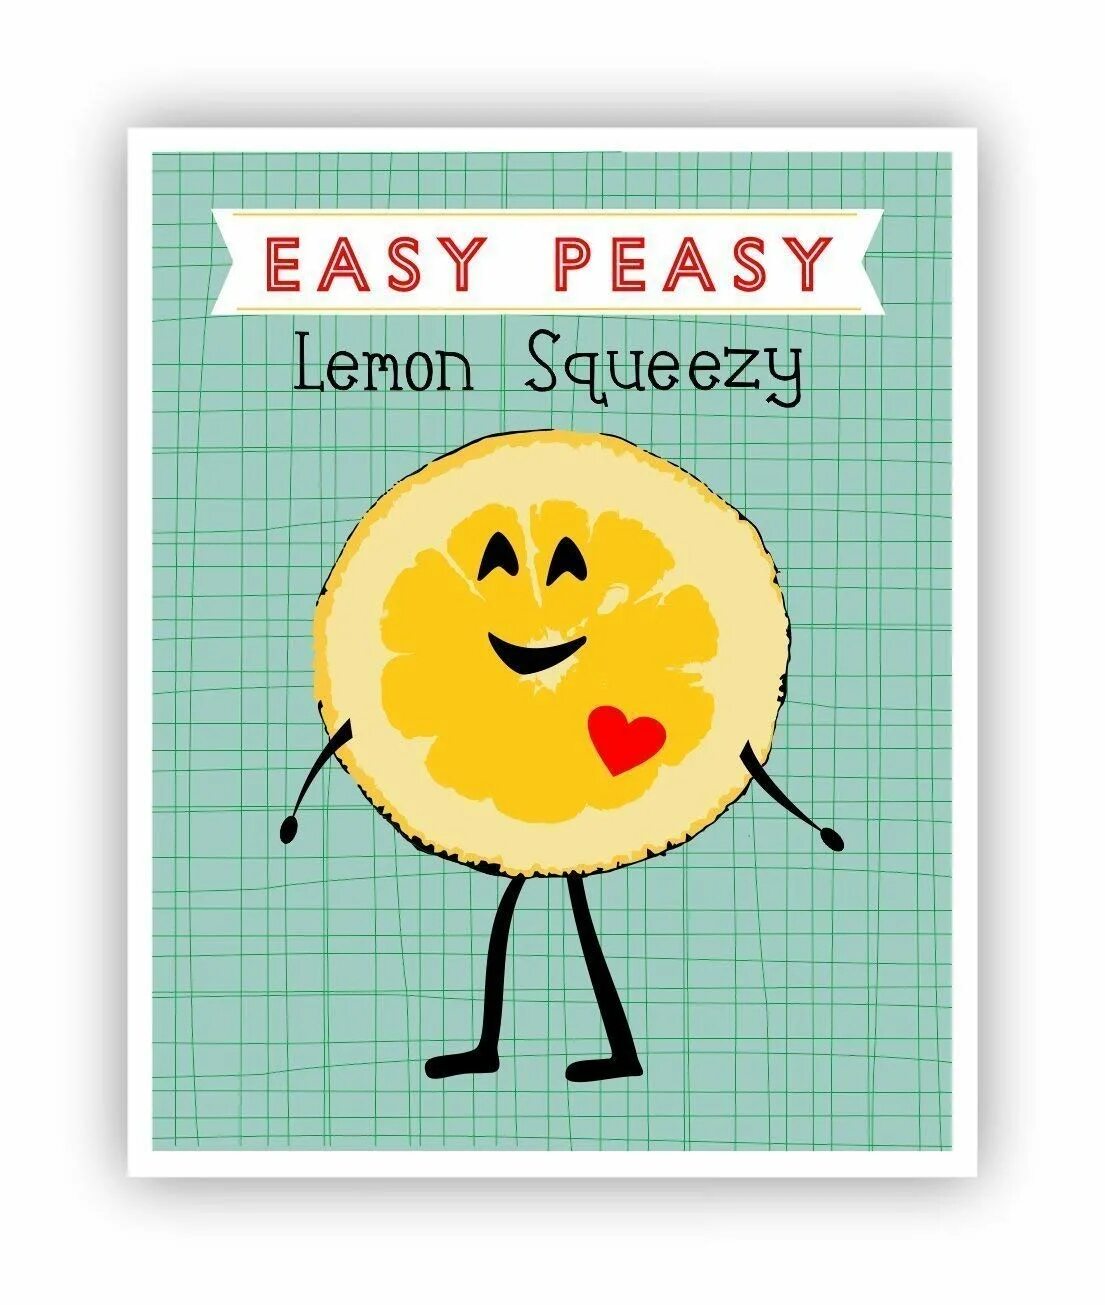 Easy peasy lemon. Easy Peasy. ИЗИ пизи Лемон. Easy Peasy Lemon Squeezy картинка. ИЗИ Бризи Леман сквизи.